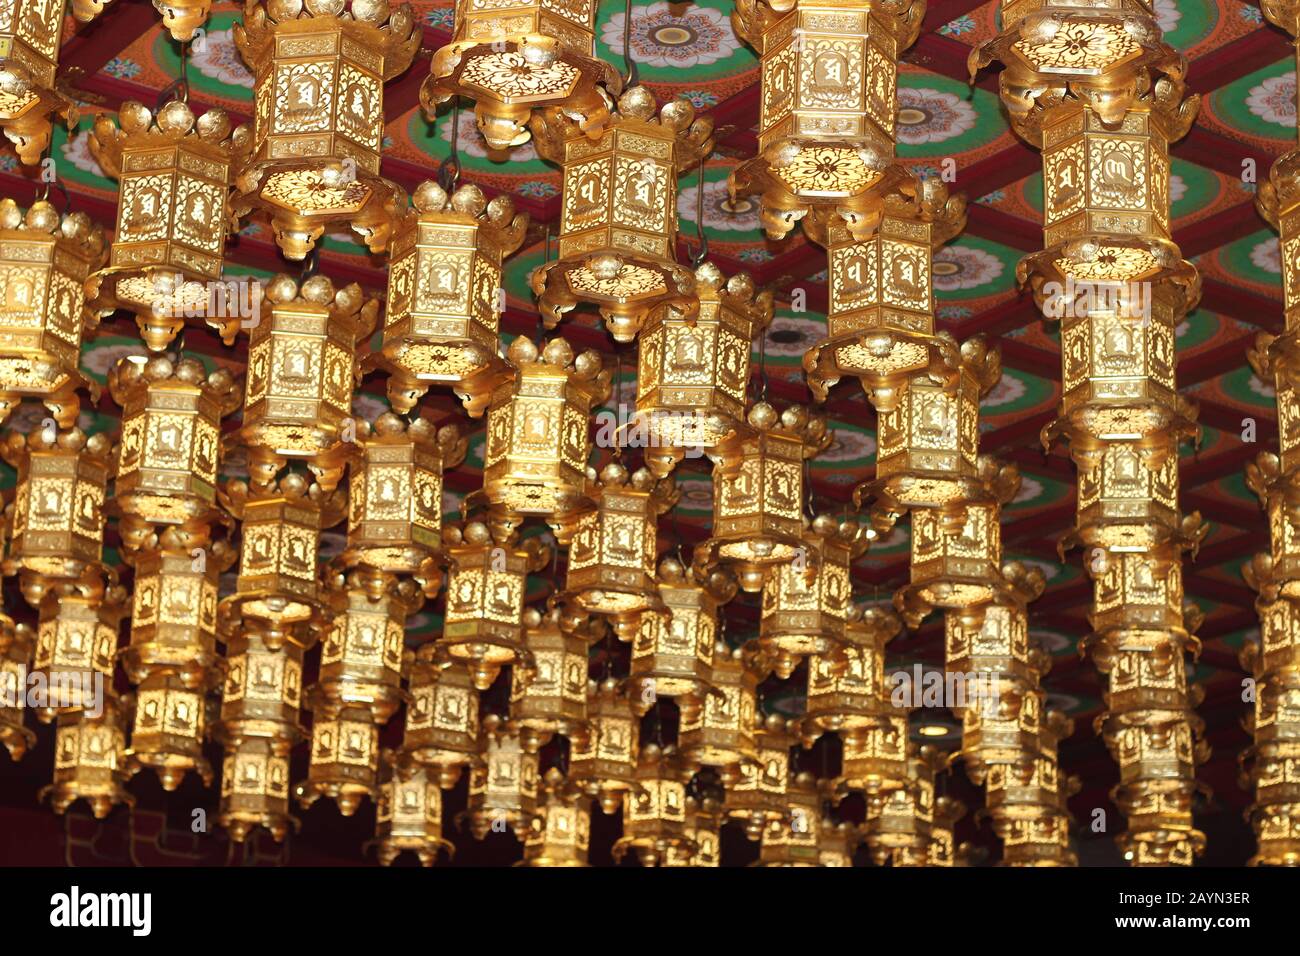 Goldene Laternen, die die Decke des Buddha-Zahnrelikus-Tempels in Singapur sägen Stockfoto